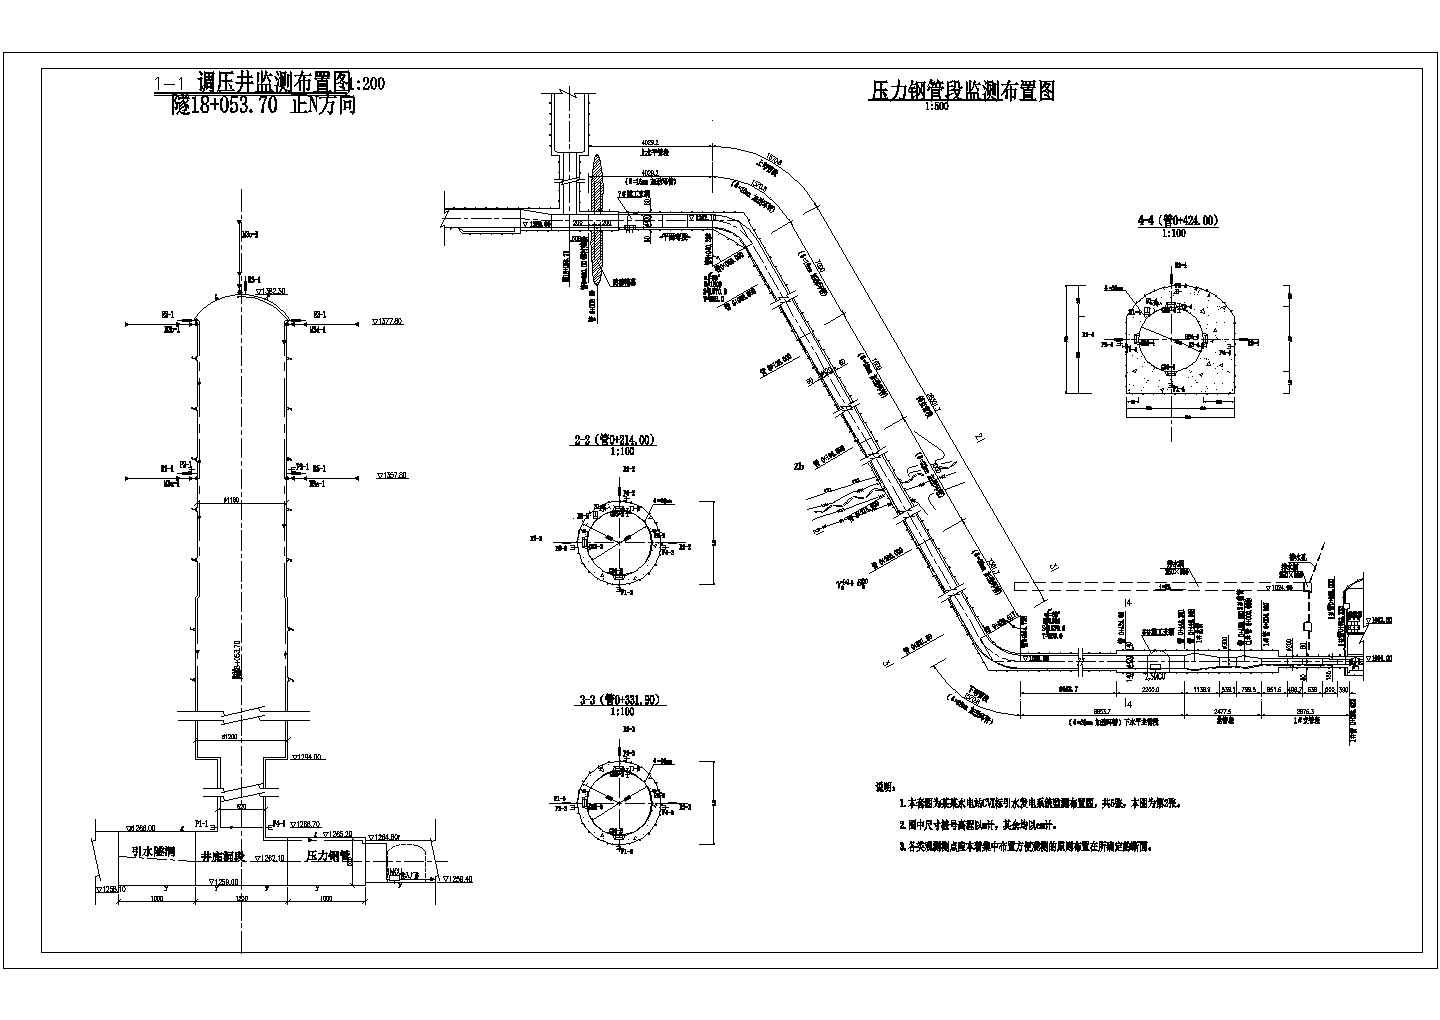 某水电站地下厂房引水发电系统监测布置图纸